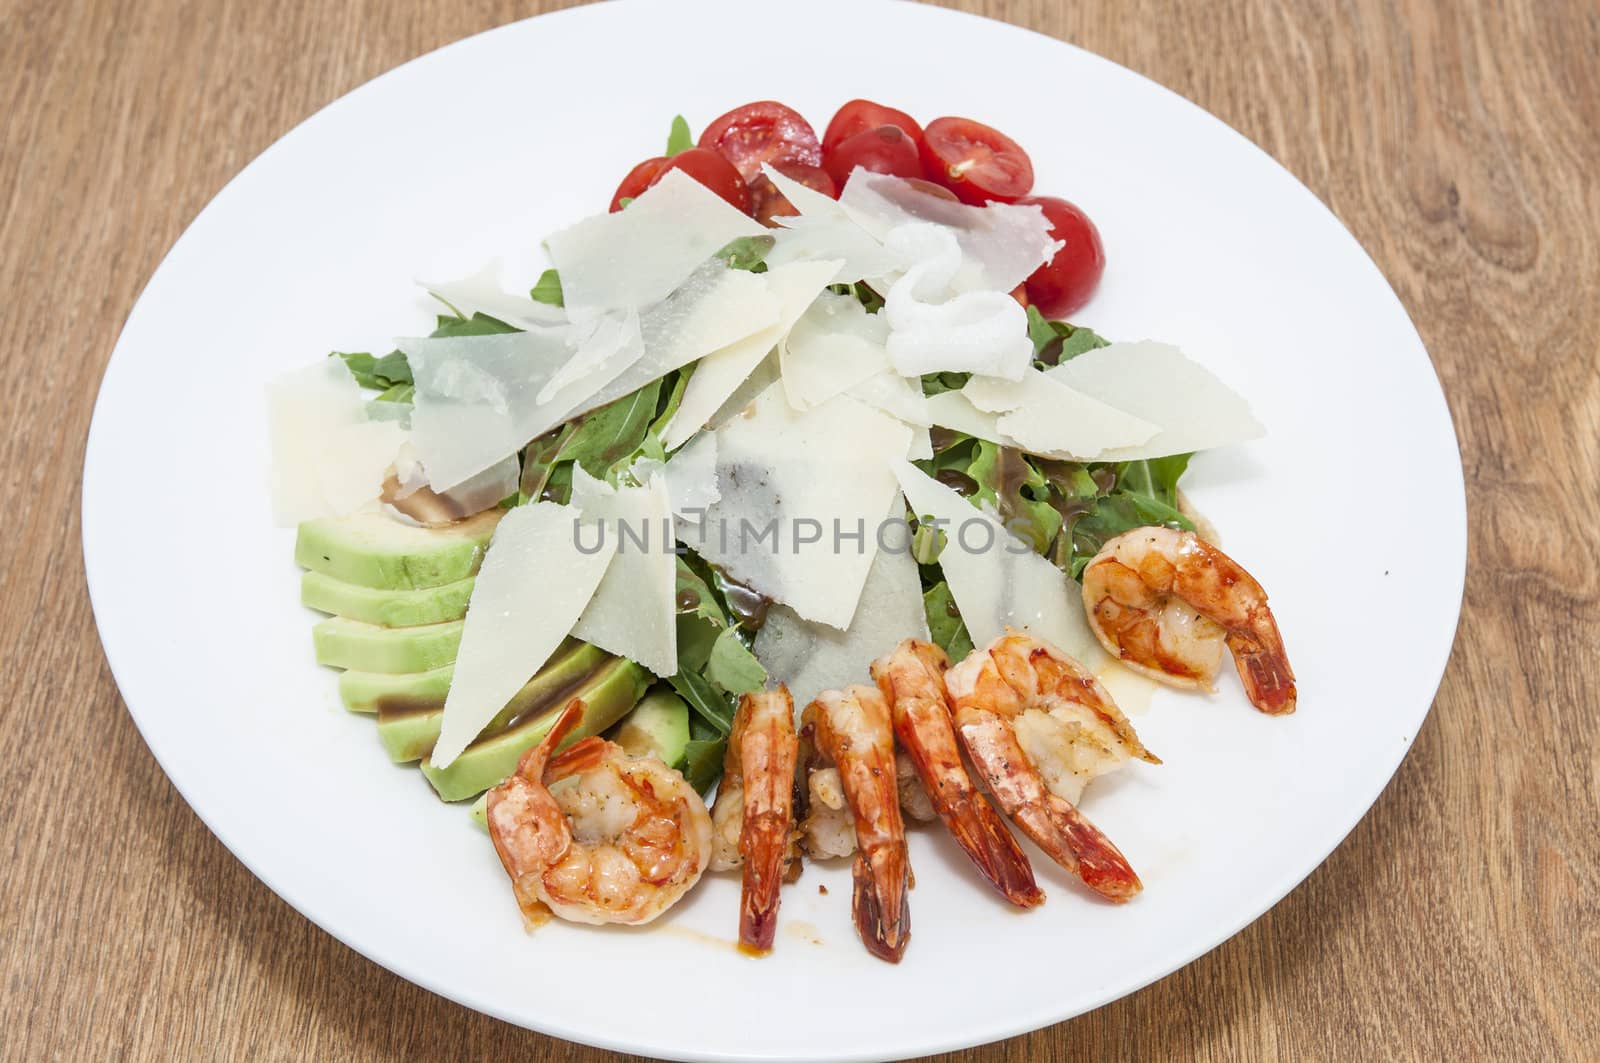 a salad of arugula and shrimp